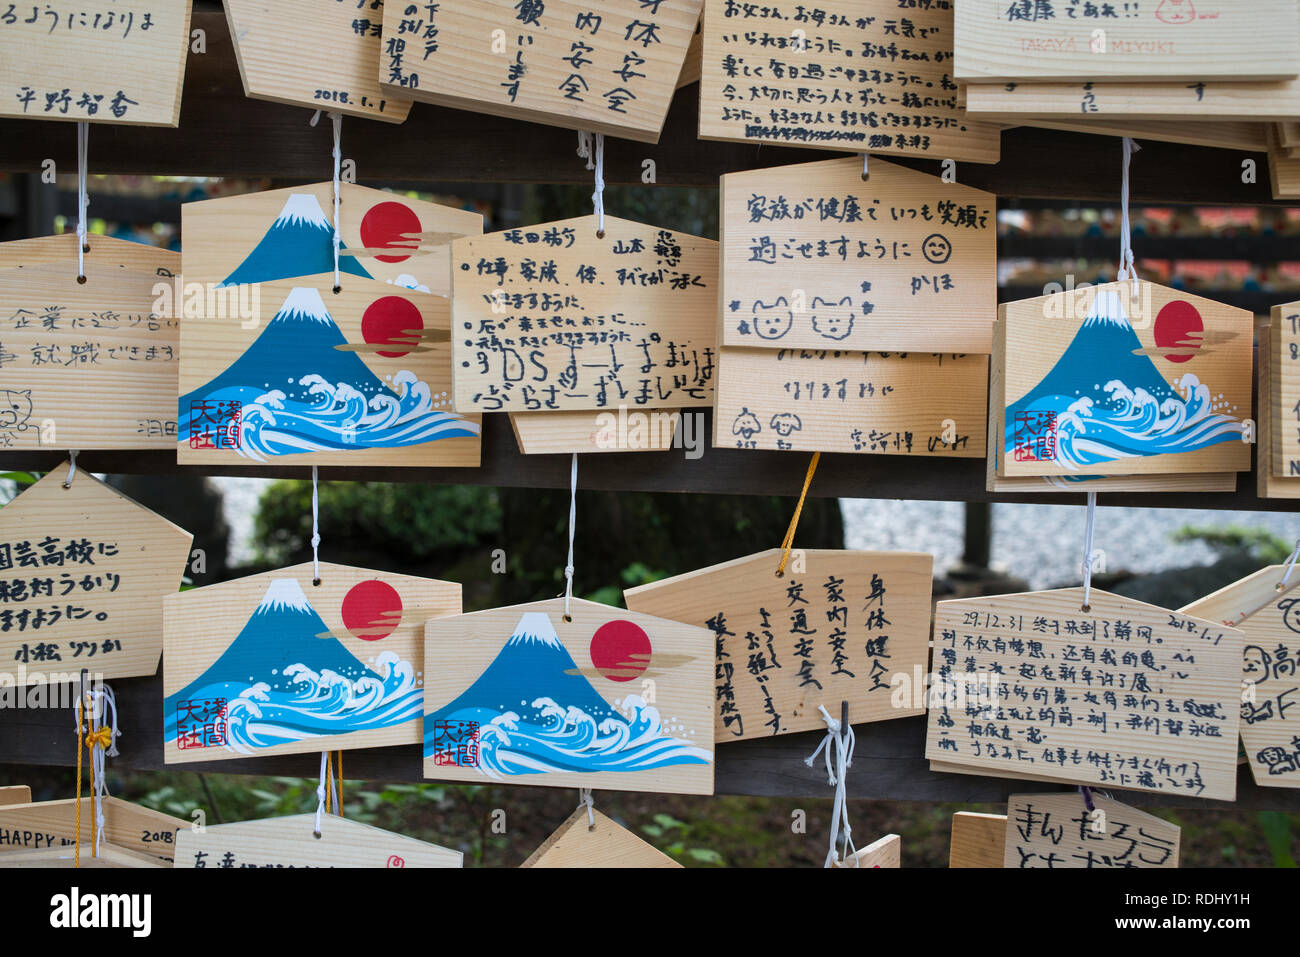 Japan, Fujinomiya: ema am Fujisan Hongu taisha Sengen - Shinto Schrein *** Local Caption *** Stockfoto